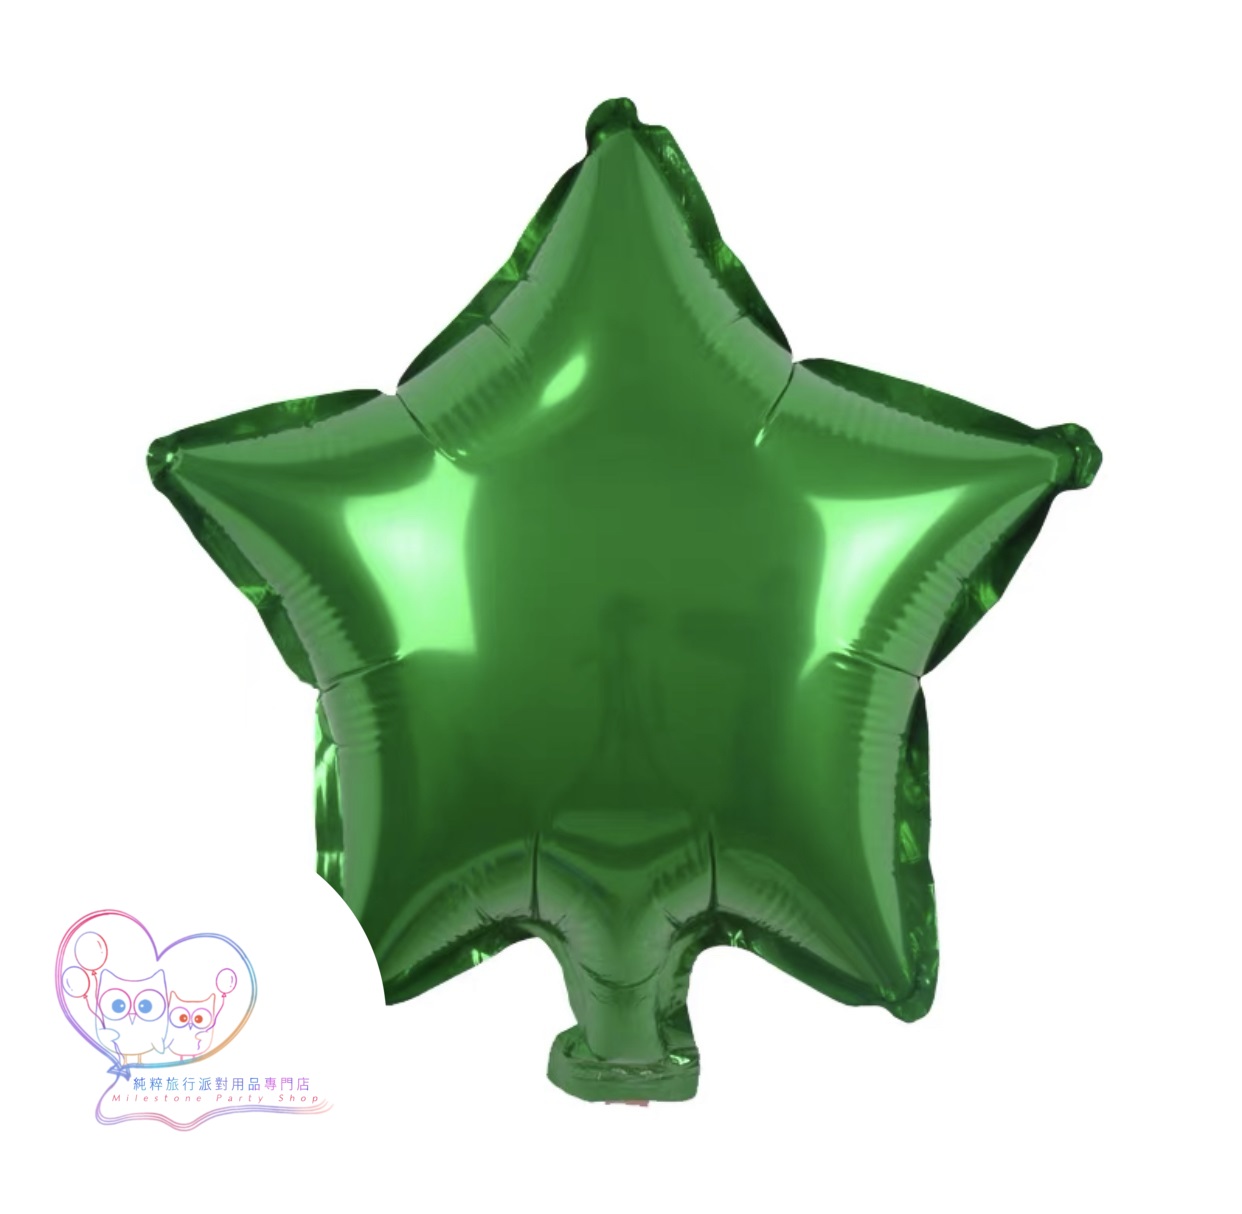 10吋星星鋁膜氣球 (綠色) 10S7